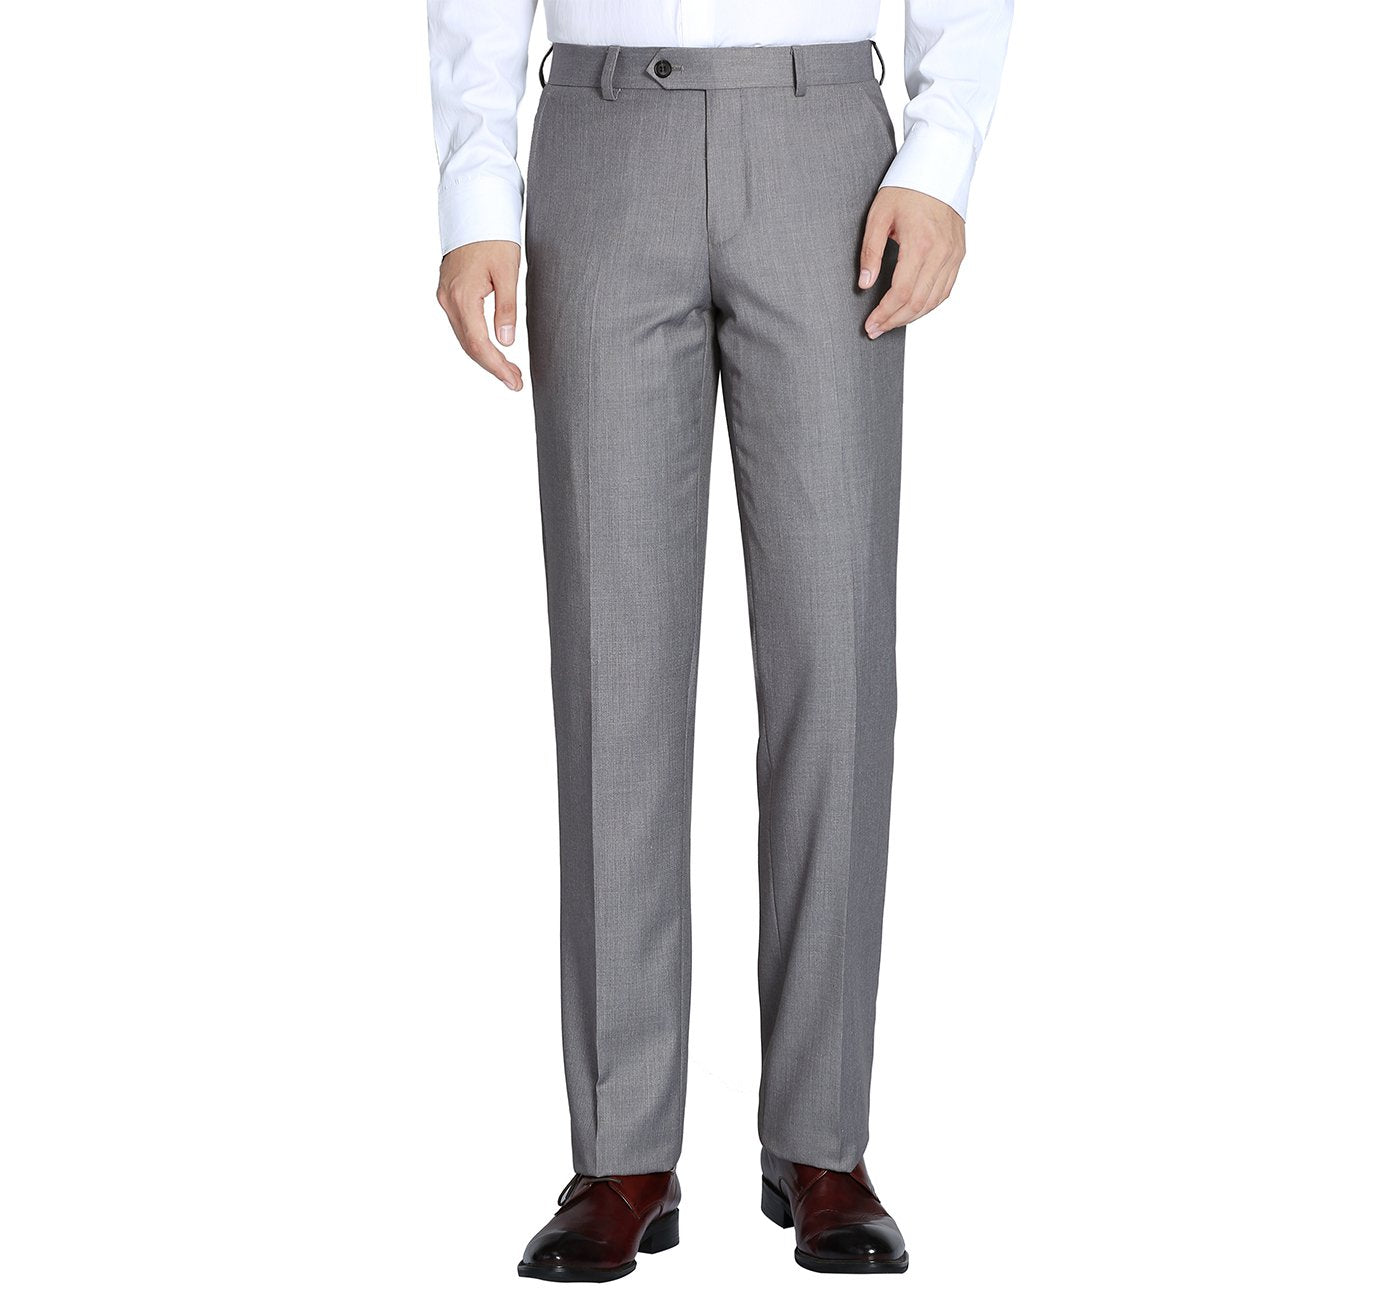 508-5 Men's Light Grey Classic Fit Flat Front Wool Suit Pant